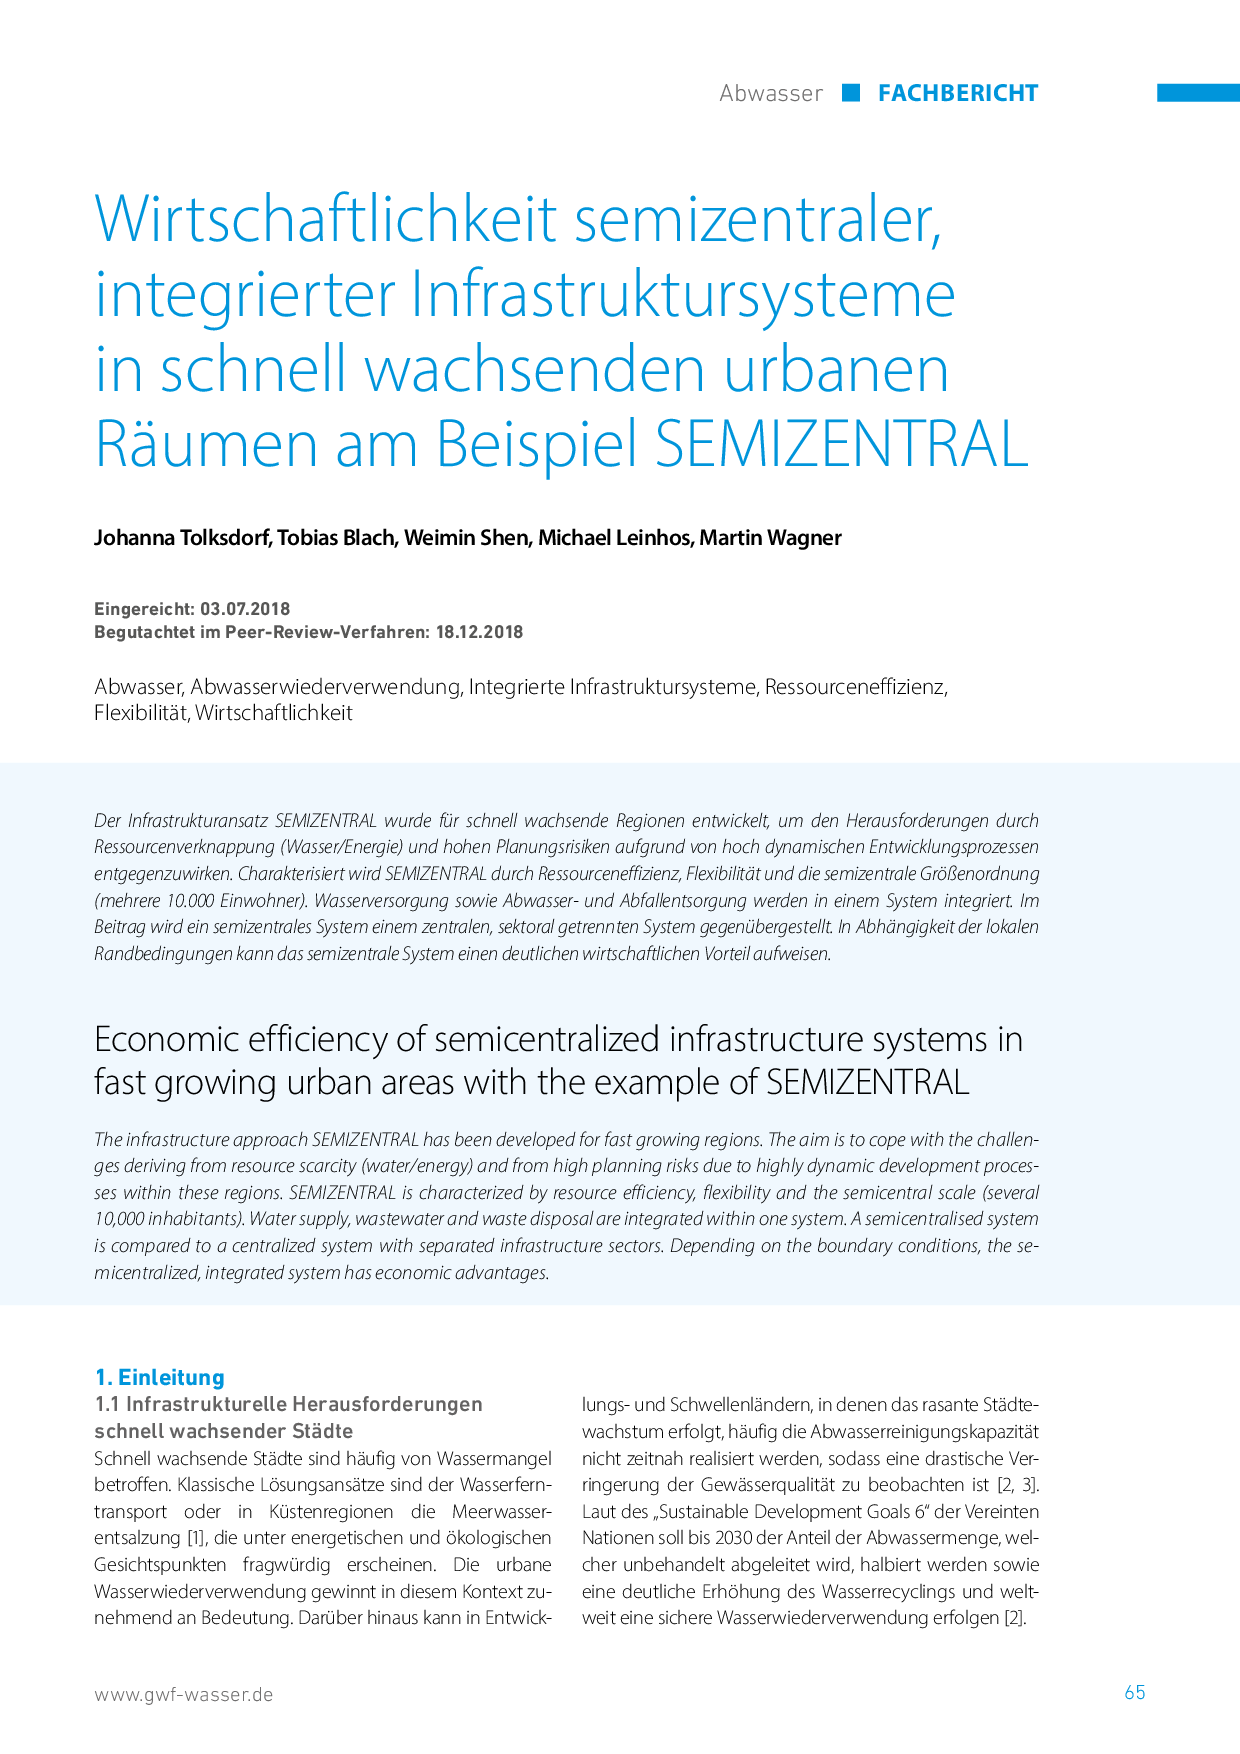 Wirtschaftlichkeit semizentraler, integrierter Infrastruktursysteme in schnell wachsenden urbanen Räumen am Beispiel SEMIZENTRAL